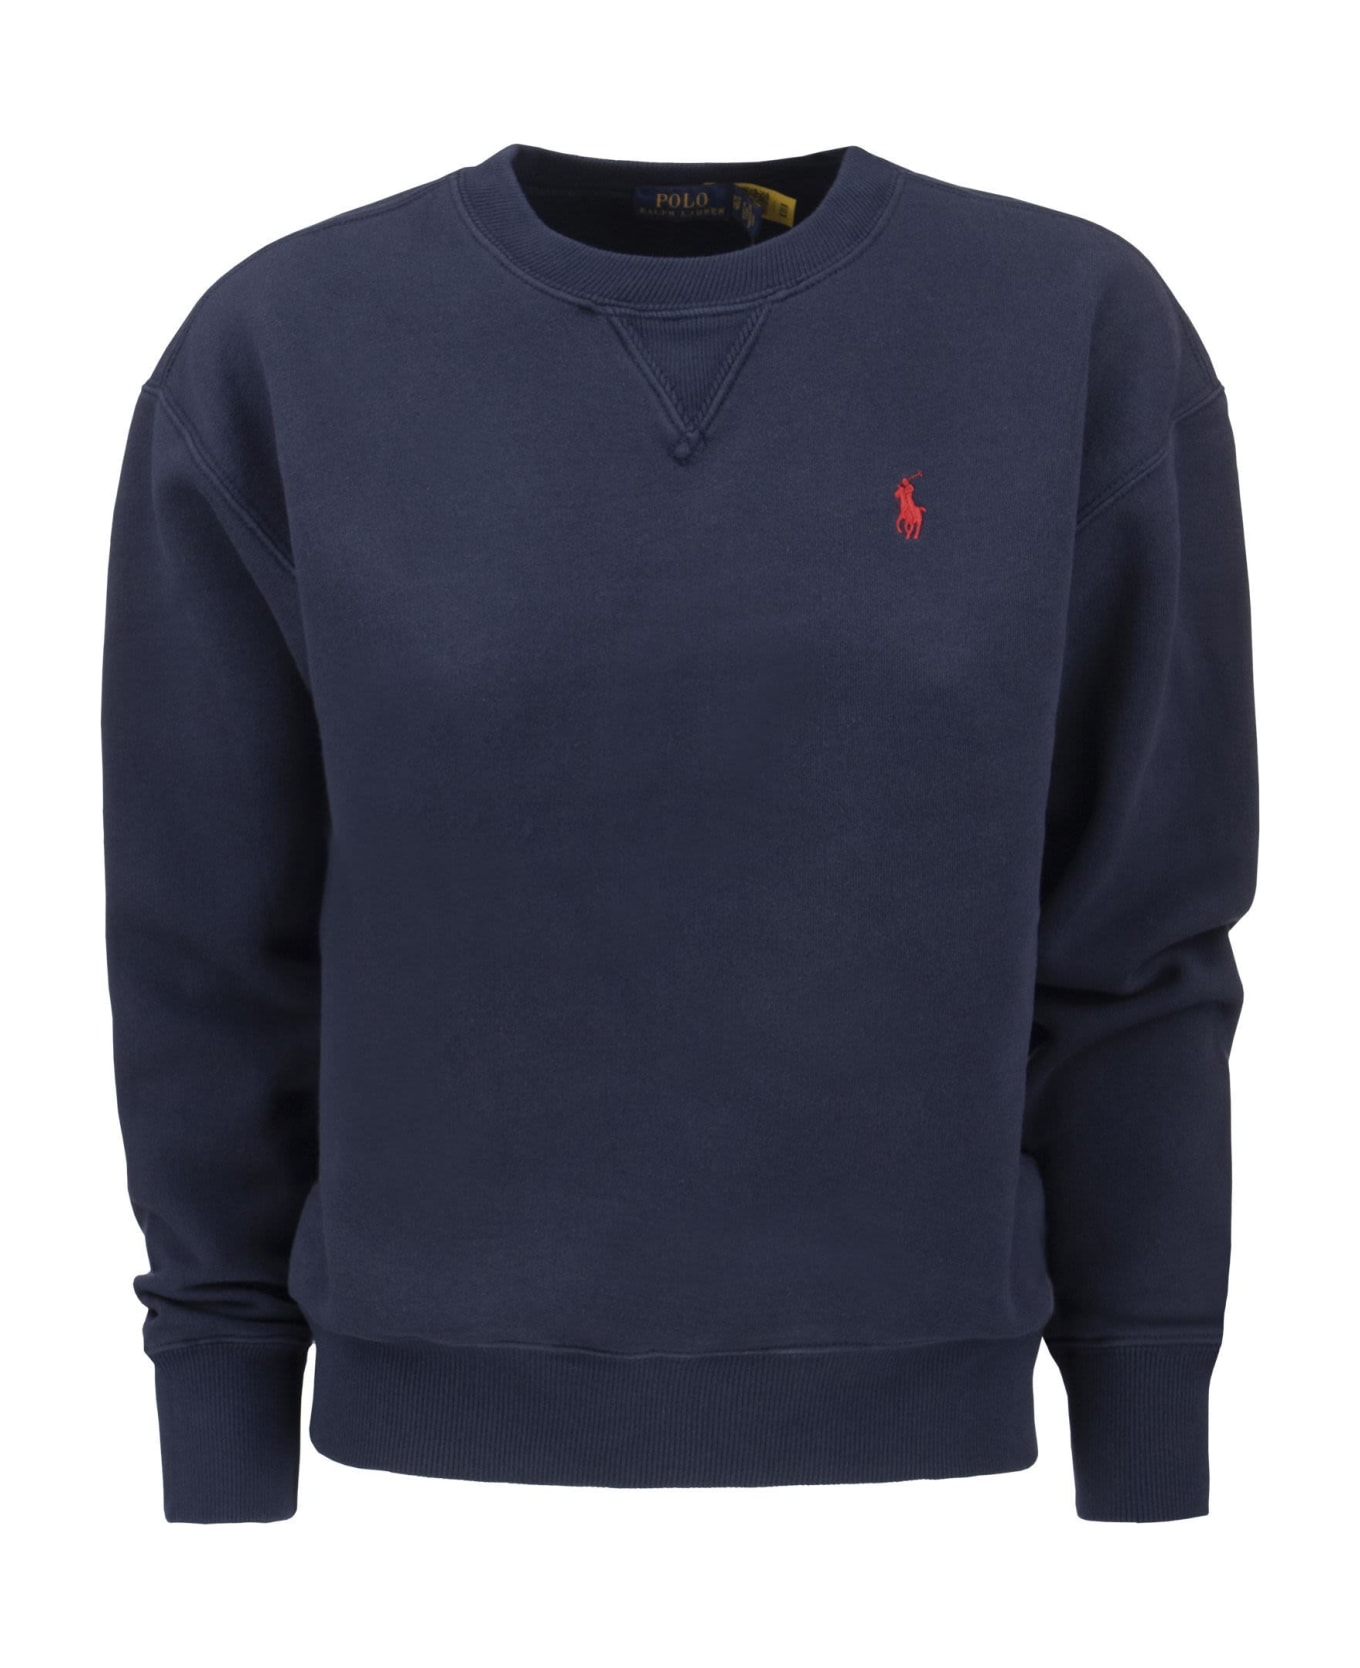 Ralph Lauren Sweatshirt With Pony - Navy Blue